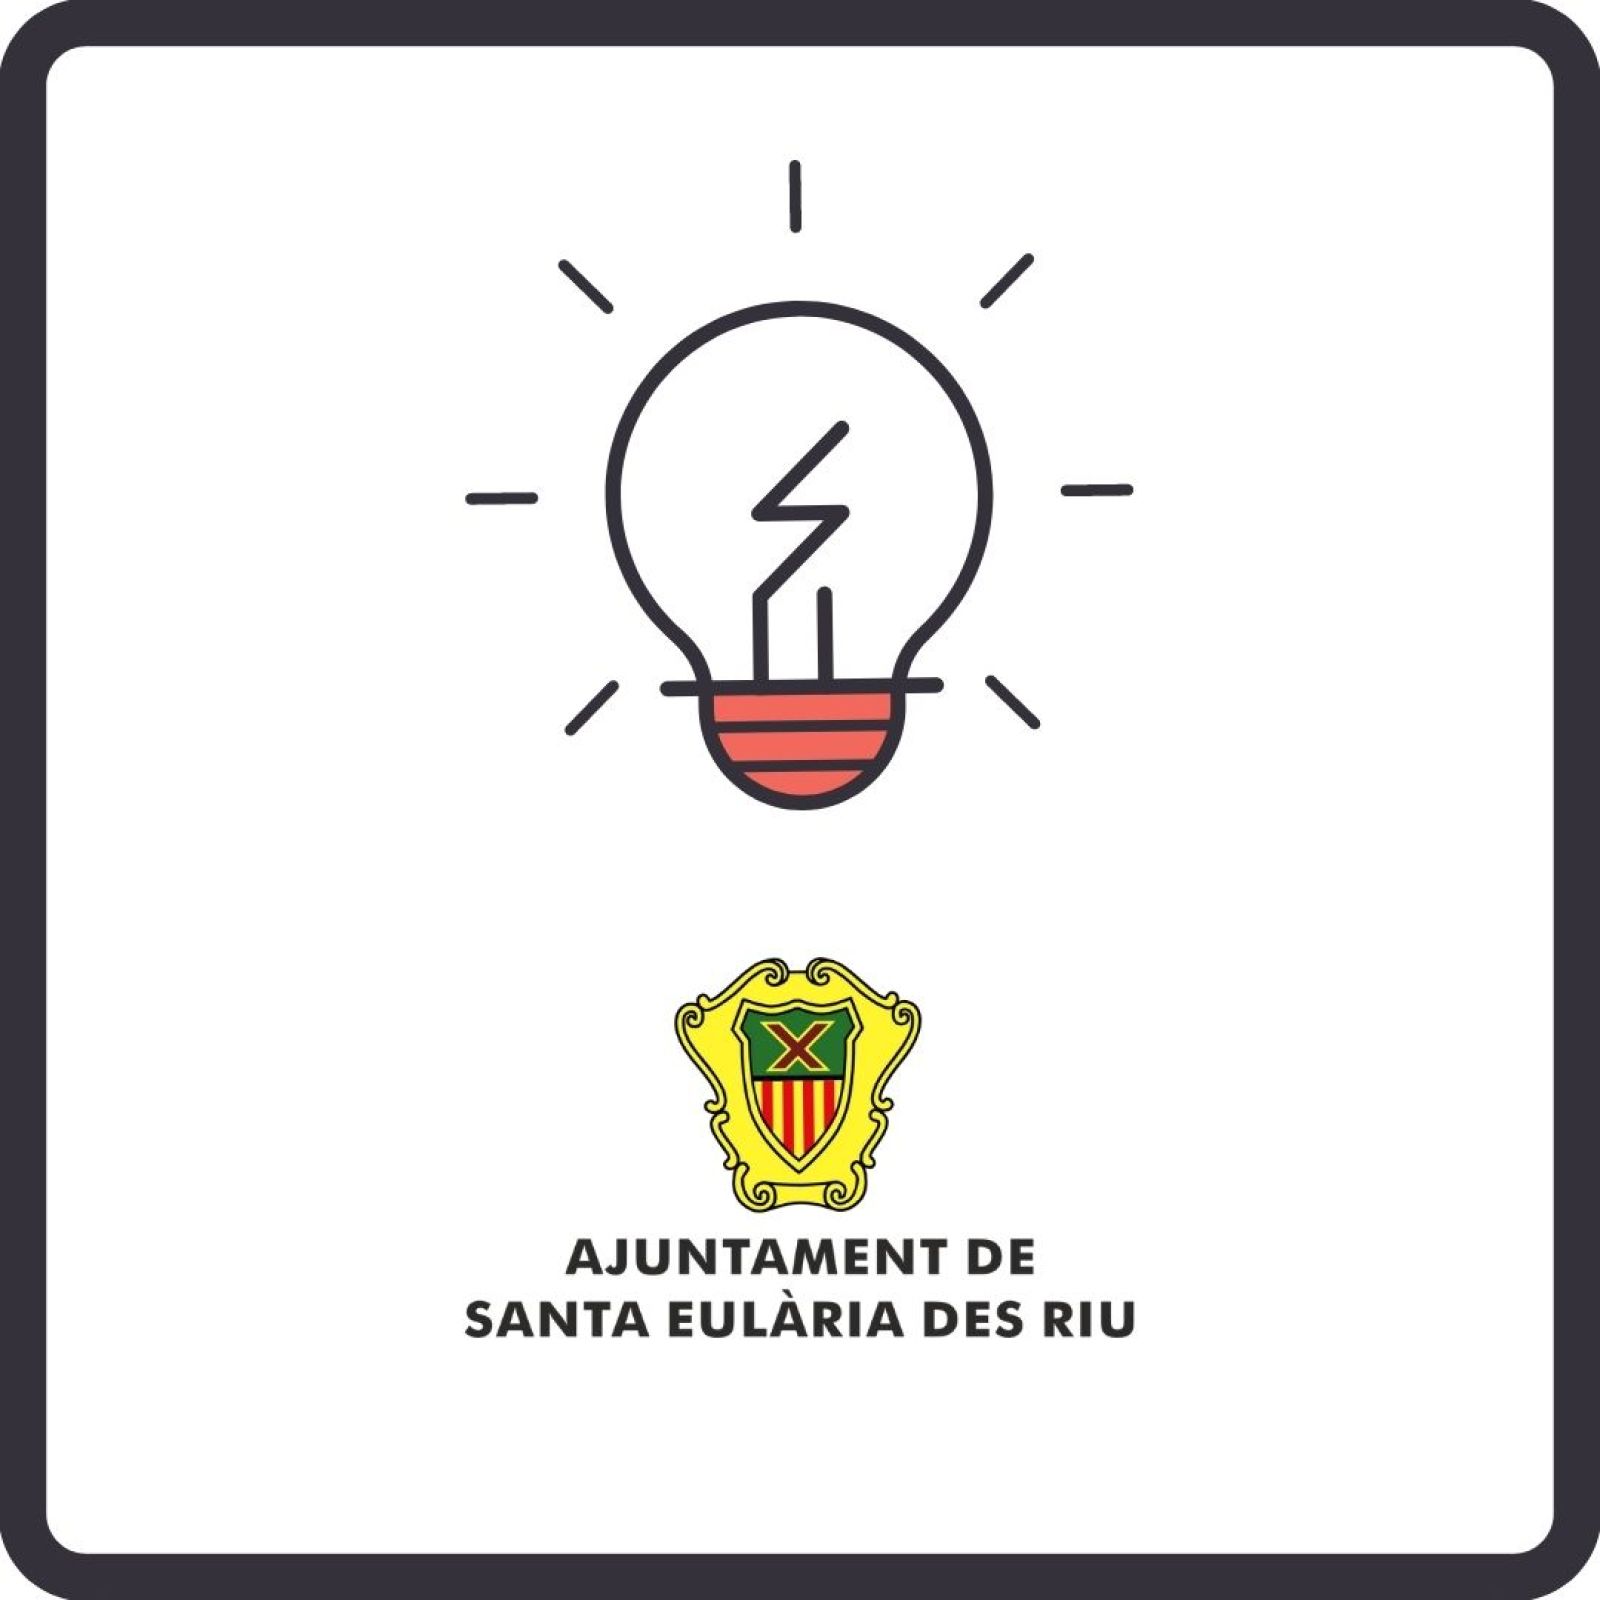 Corte temporal del suministro de energía eléctrica en diferentes zonas de Santa Eulària des Riu el día 25 de mayo.